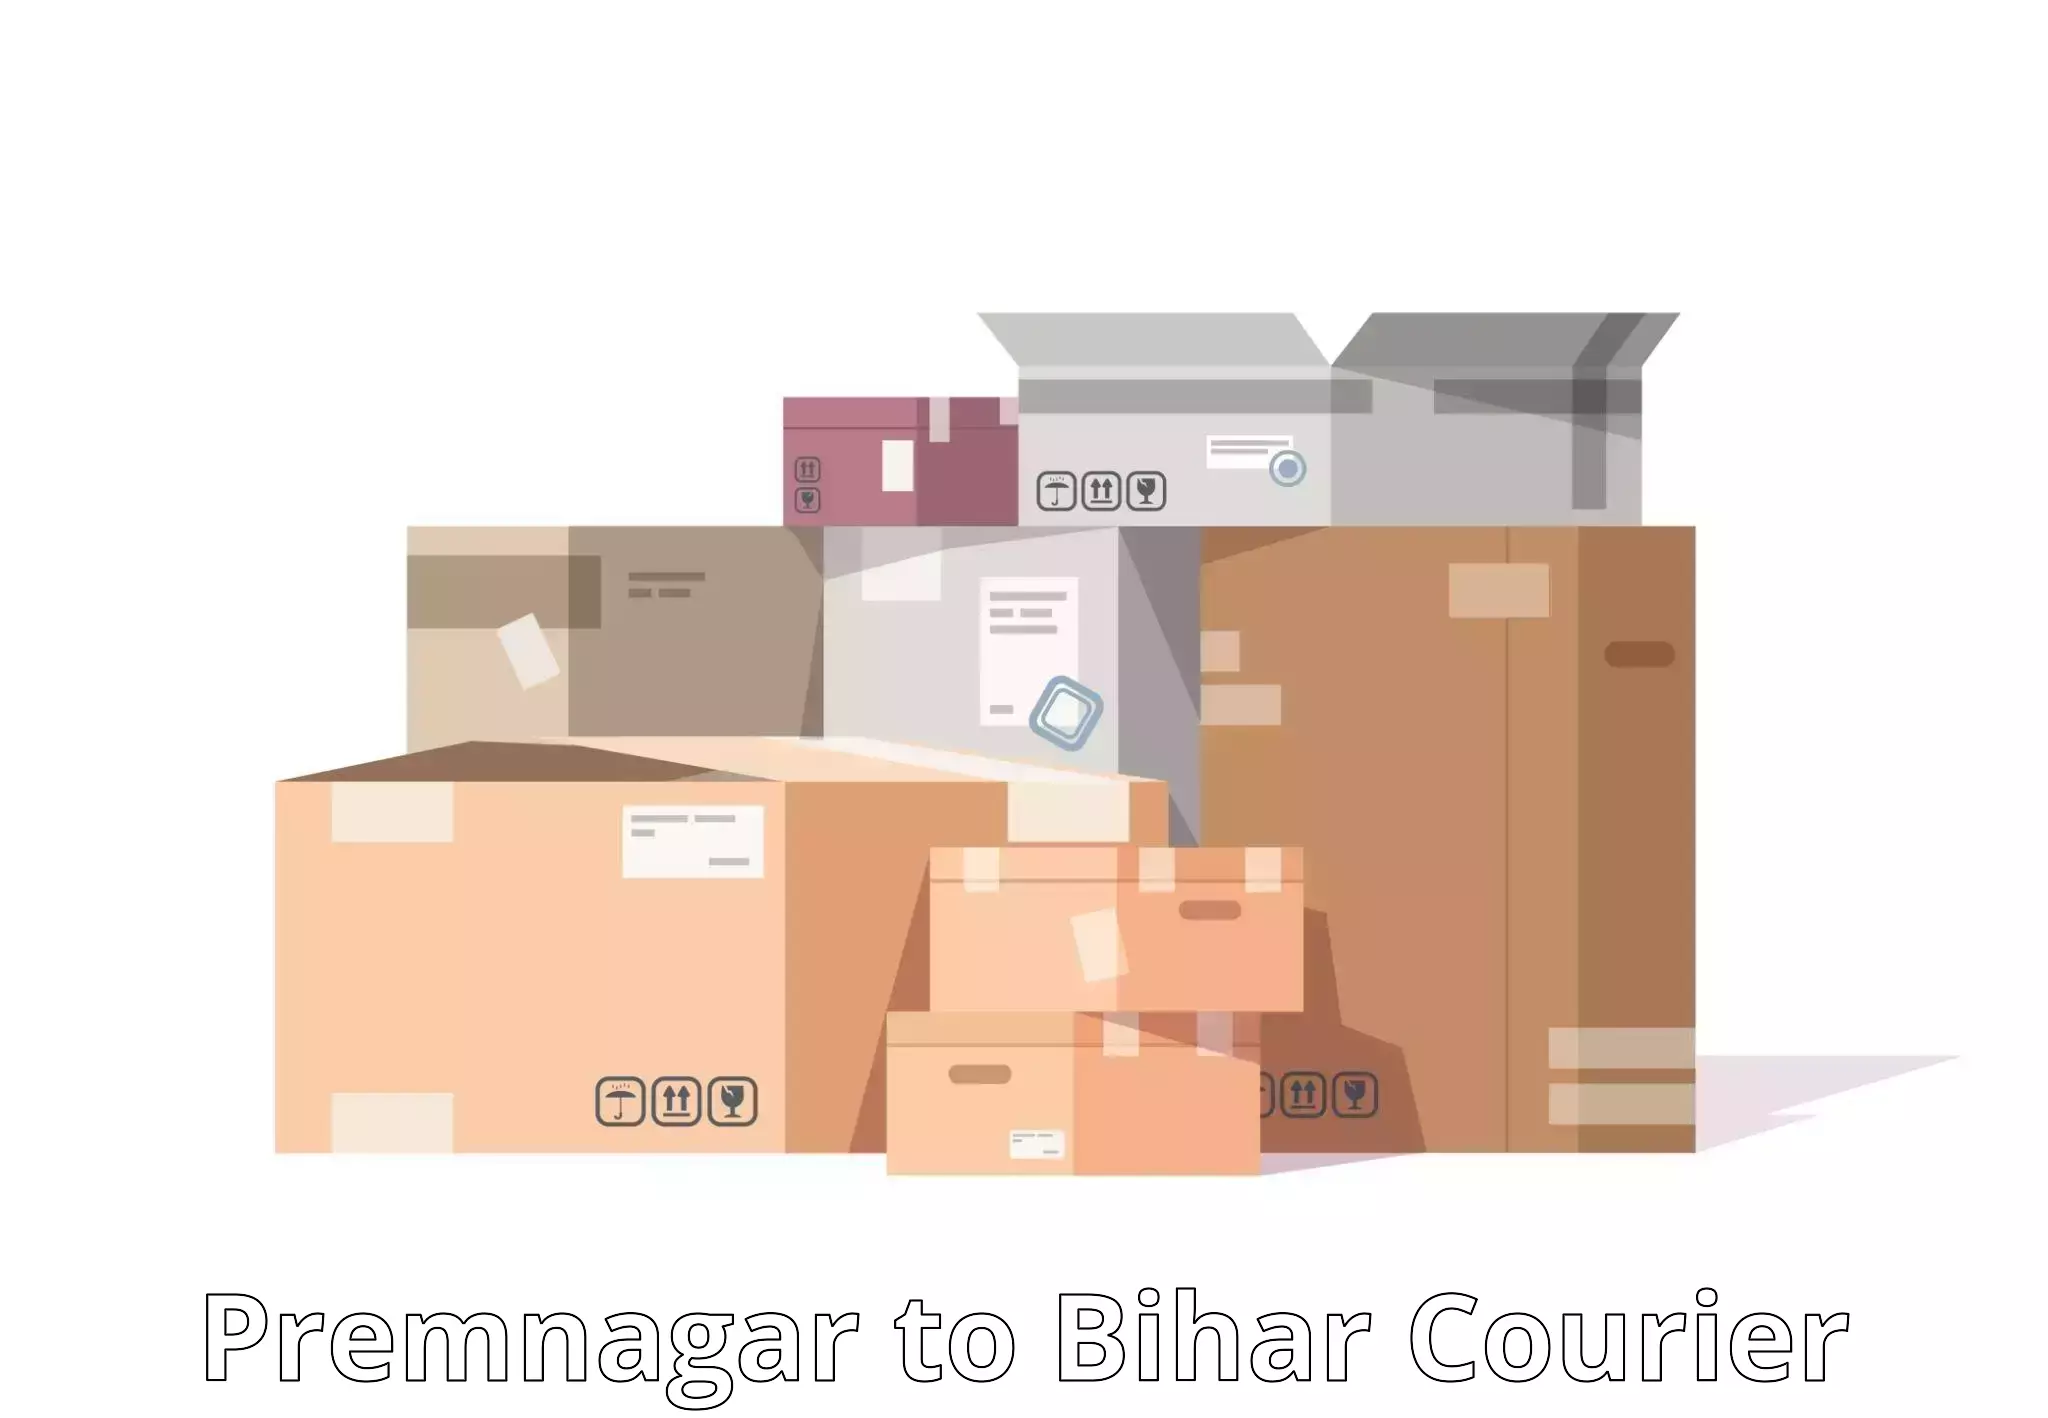 Comprehensive logistics solutions Premnagar to Bikramganj